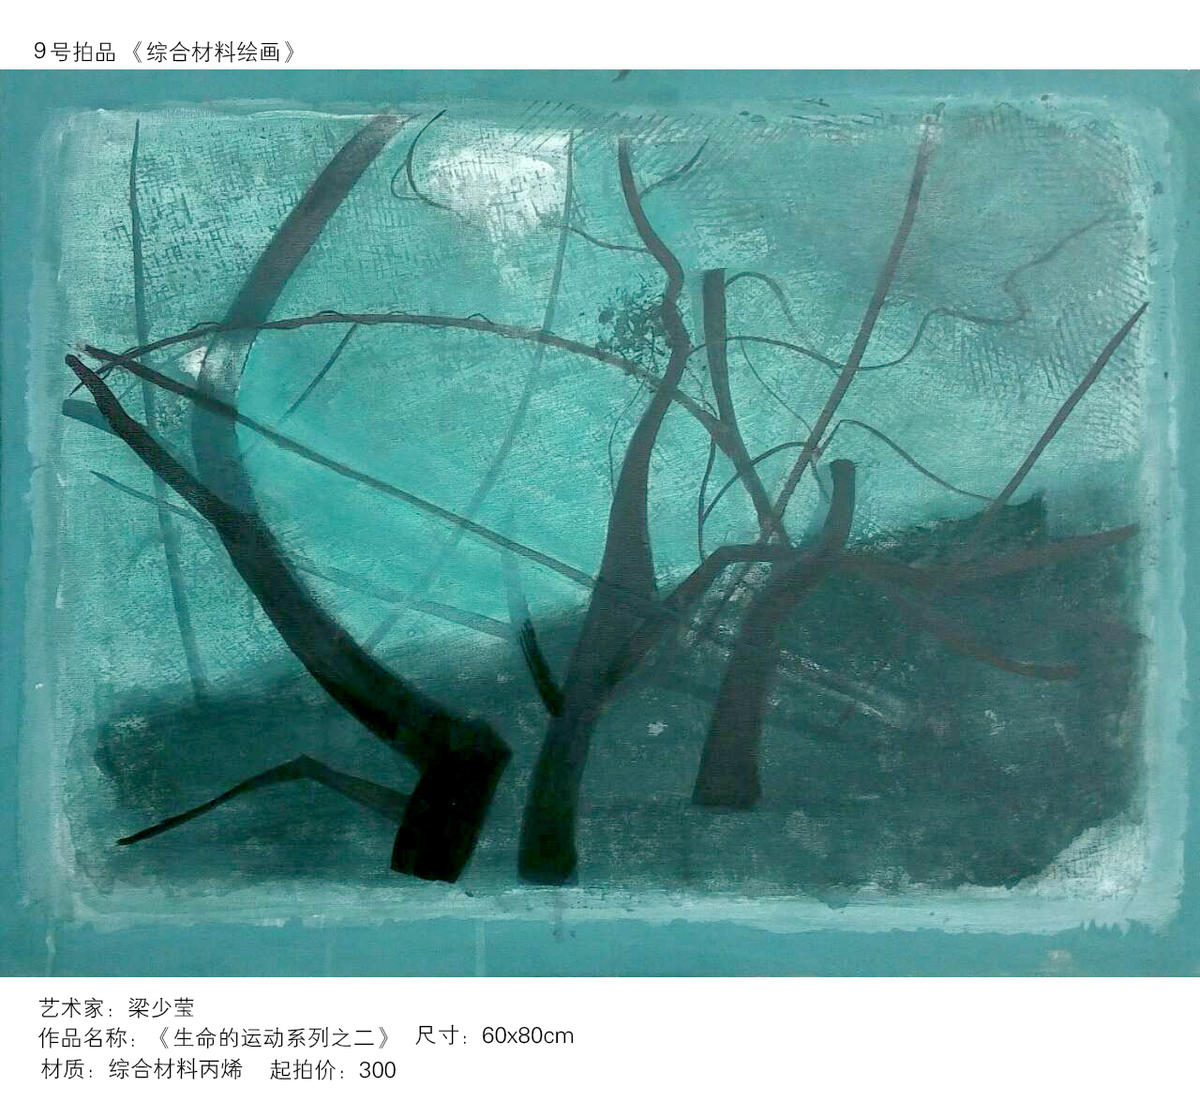 北京艺拍 第一期艺术精品作品展示